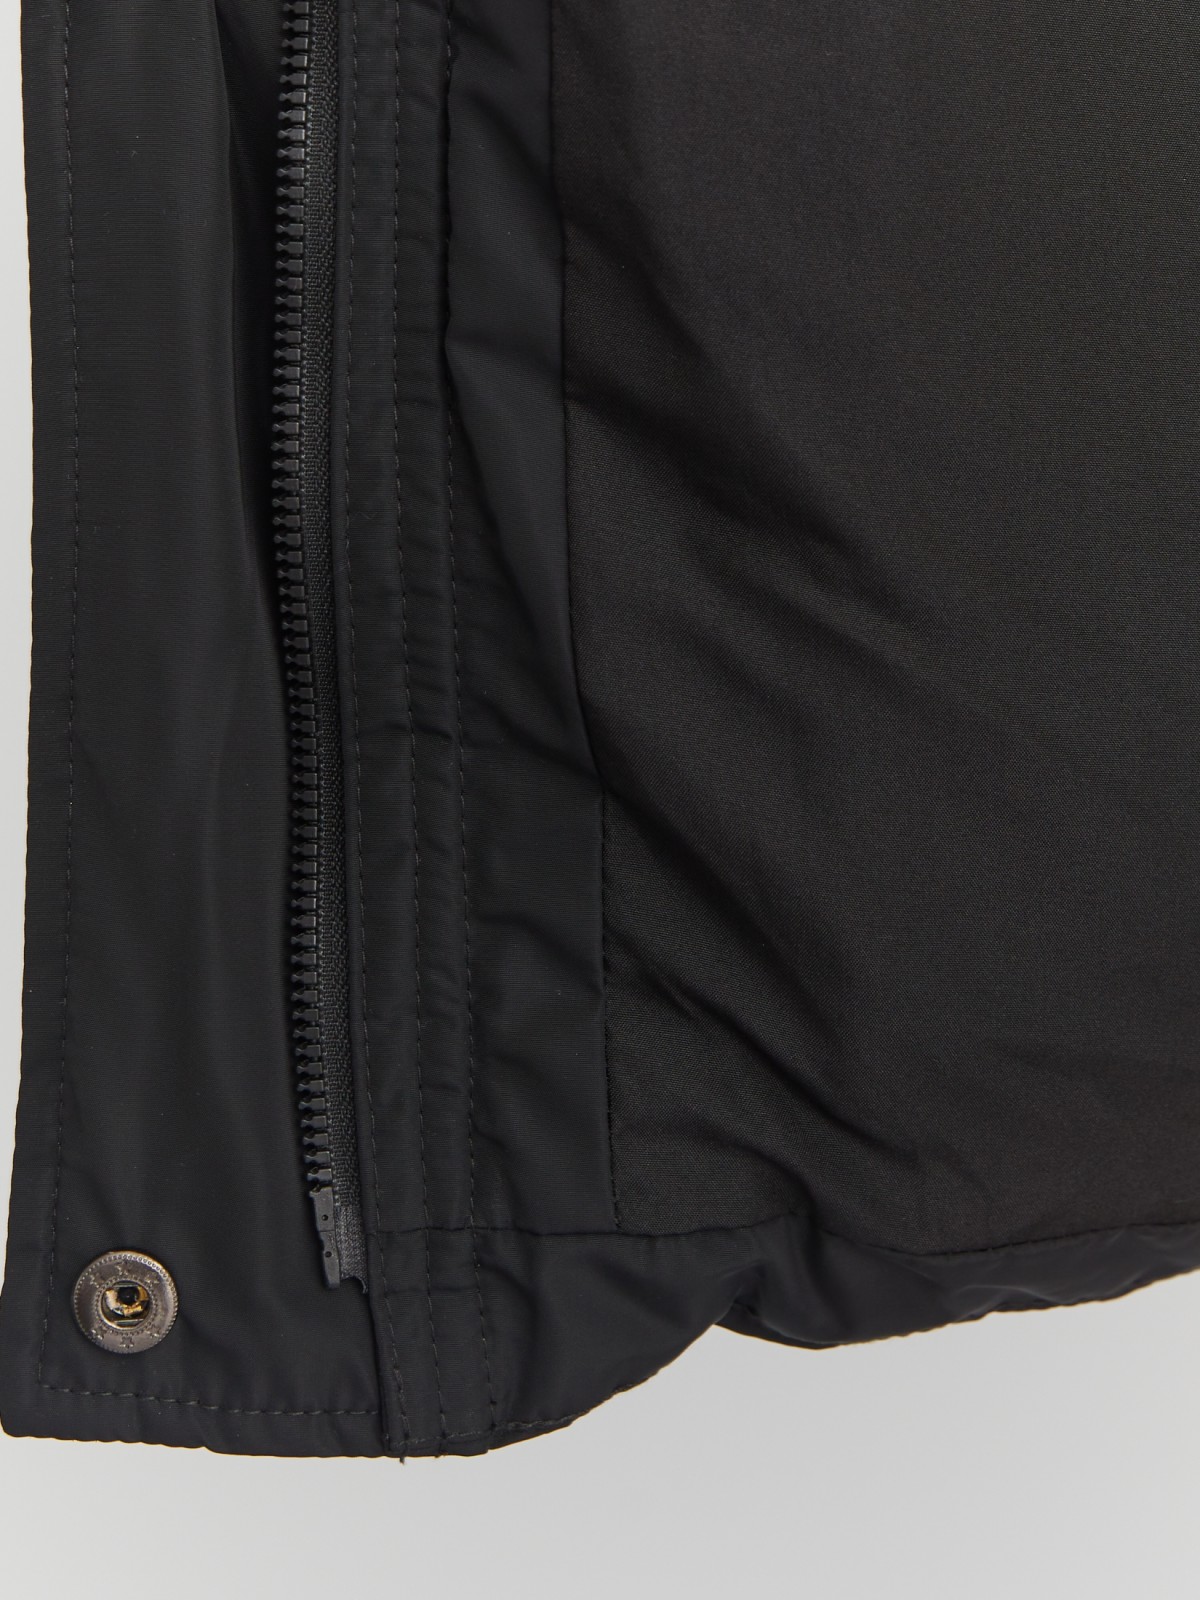 Тёплая стёганая куртка с капюшоном и внутренними манжетами-риб zolla 023345102064, цвет черный, размер S - фото 5